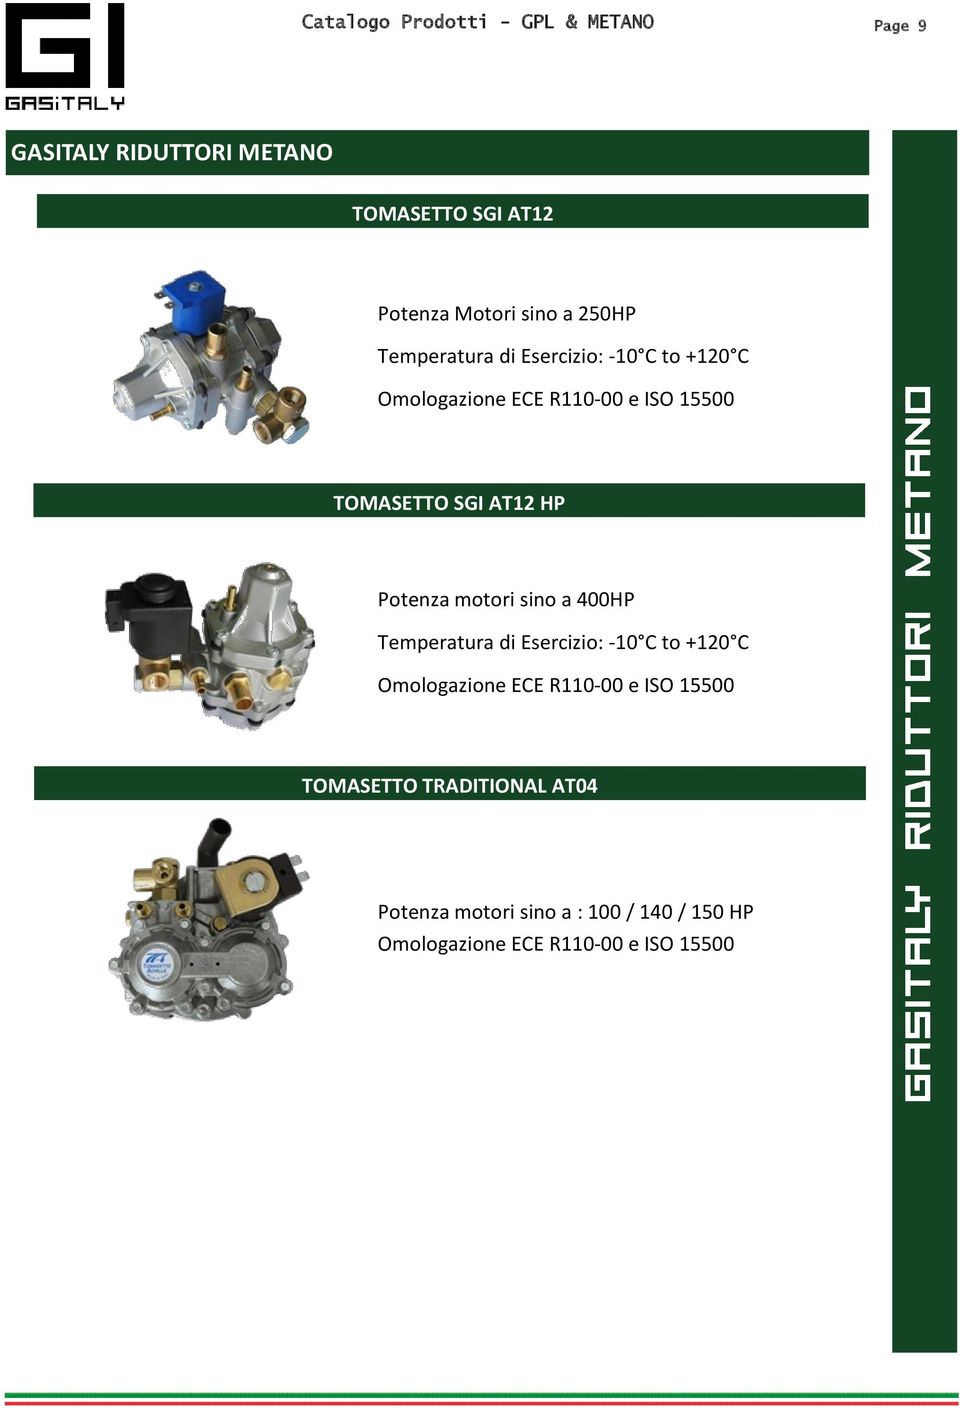 Potenza motori sino a 400HP Temperatura di Esercizio: -10 C to +120 C Omologazione ECE R110-00 e ISO 15500